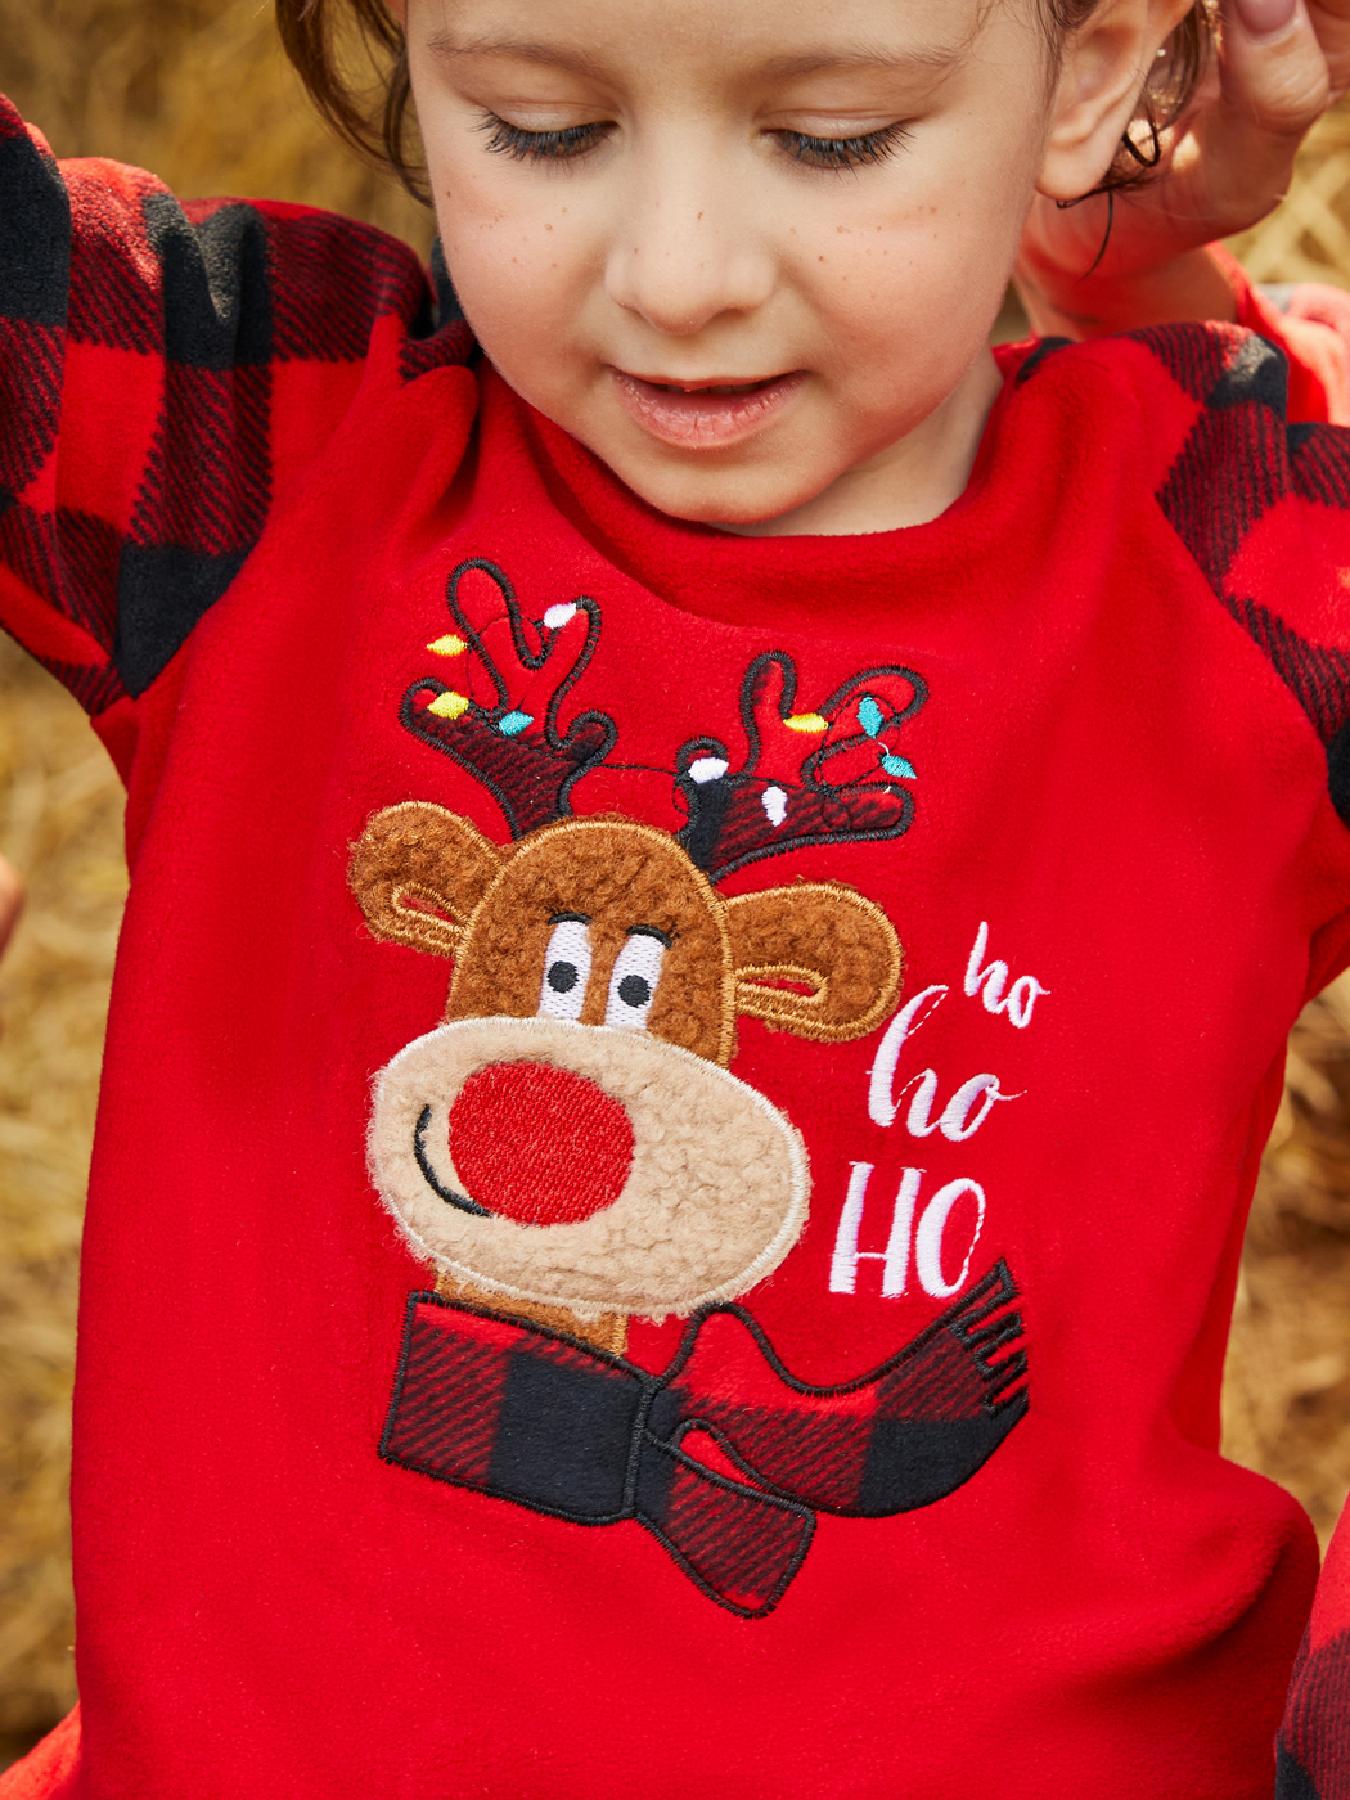 Los Niños Abrazan En Vacaciones De Navidad Polar Pijamas Fotos, retratos,  imágenes y fotografía de archivo libres de derecho. Image 23792728